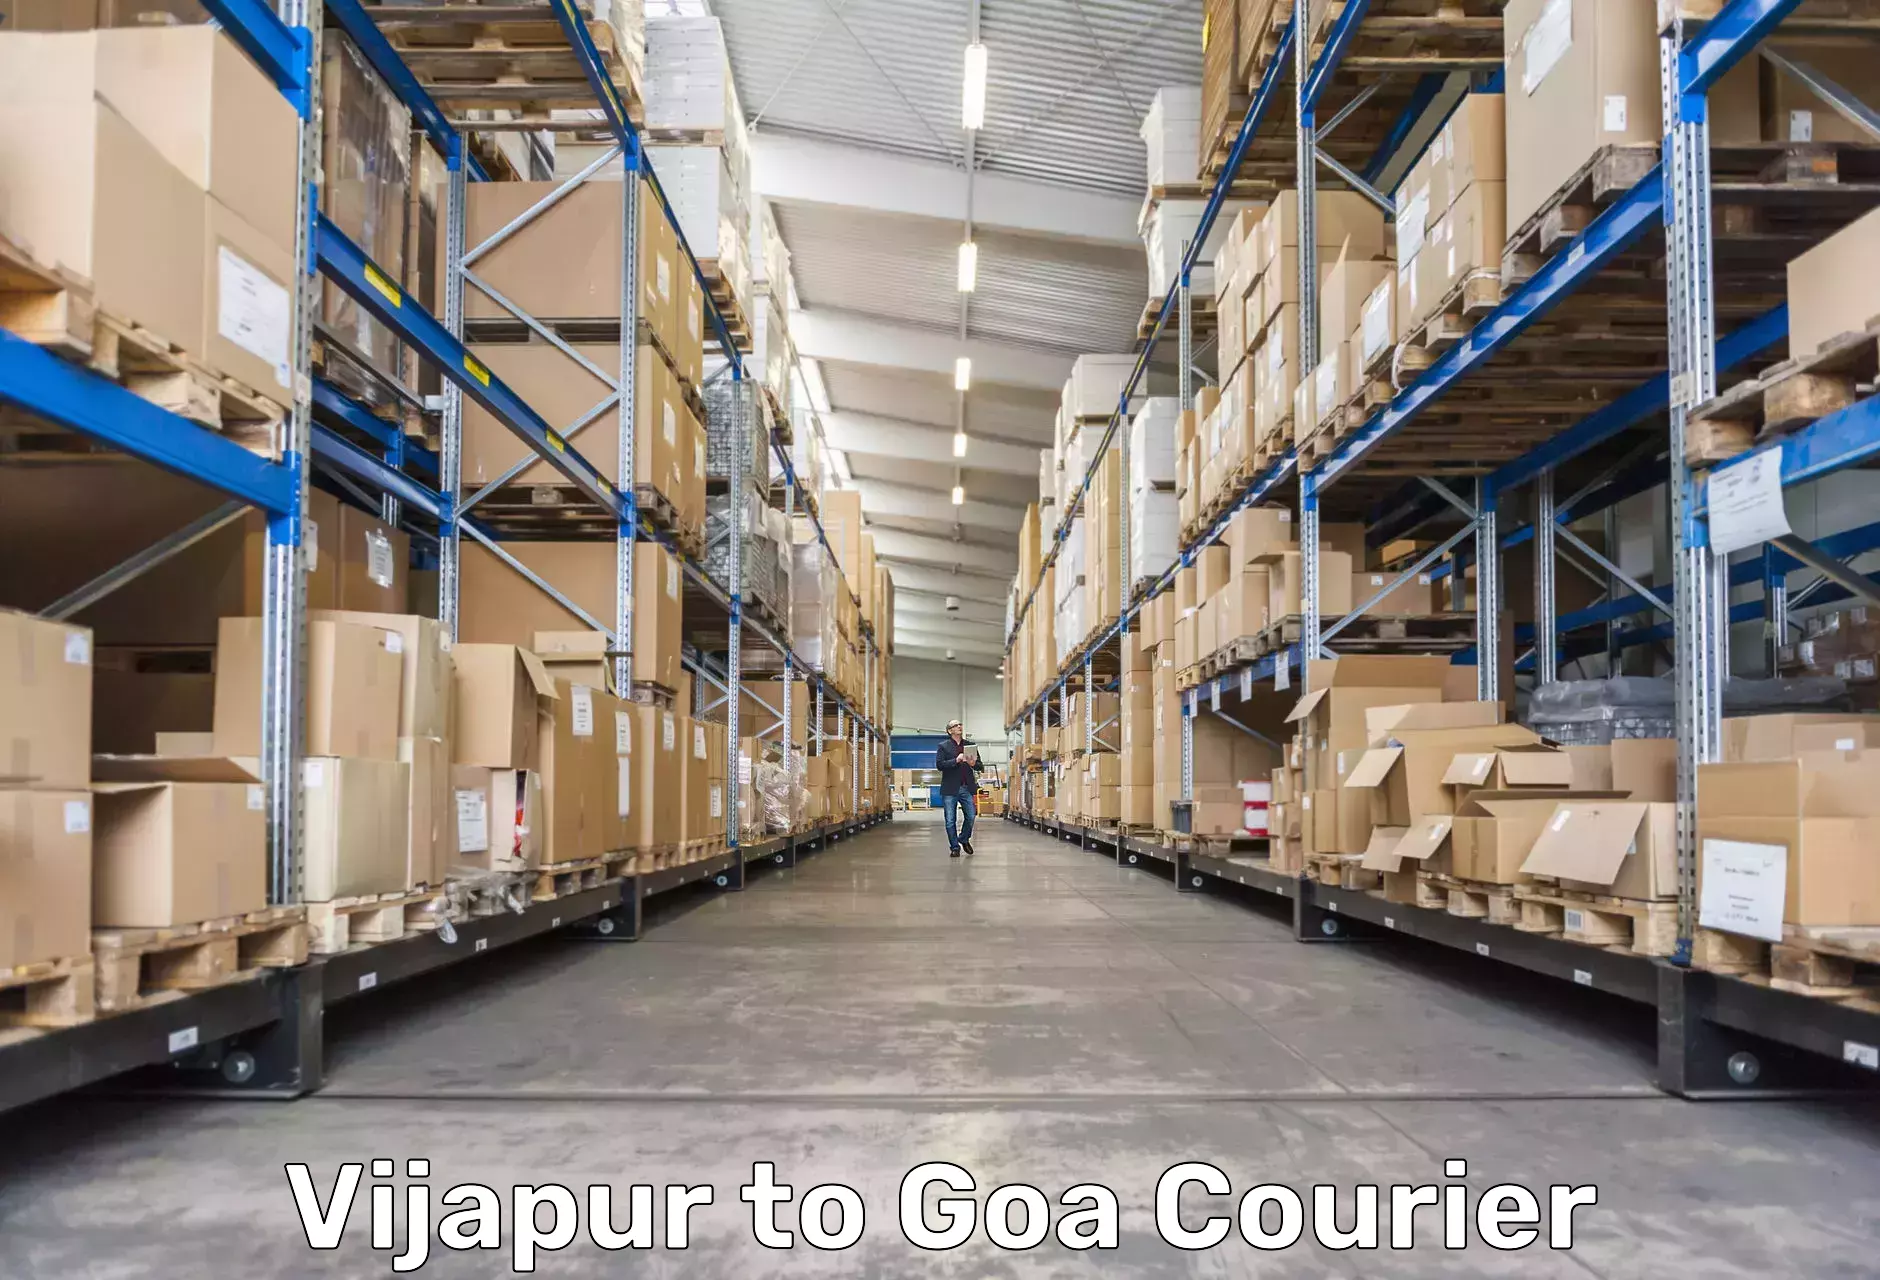 Logistics service provider Vijapur to South Goa